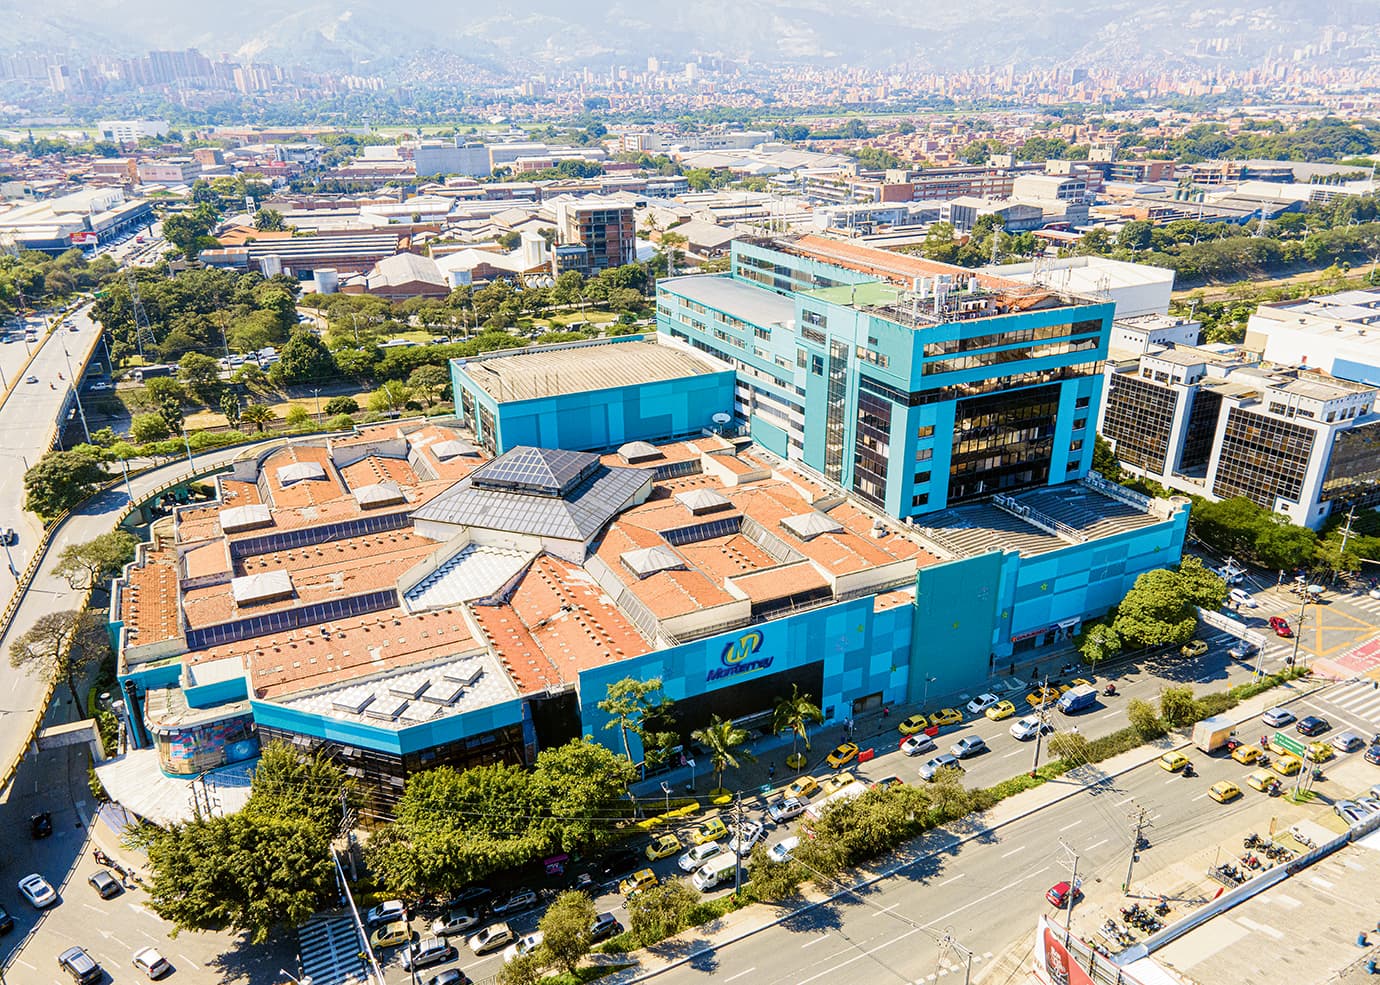 Centro comercial Monterrey, 35 años brindando emociones a sus visitantes